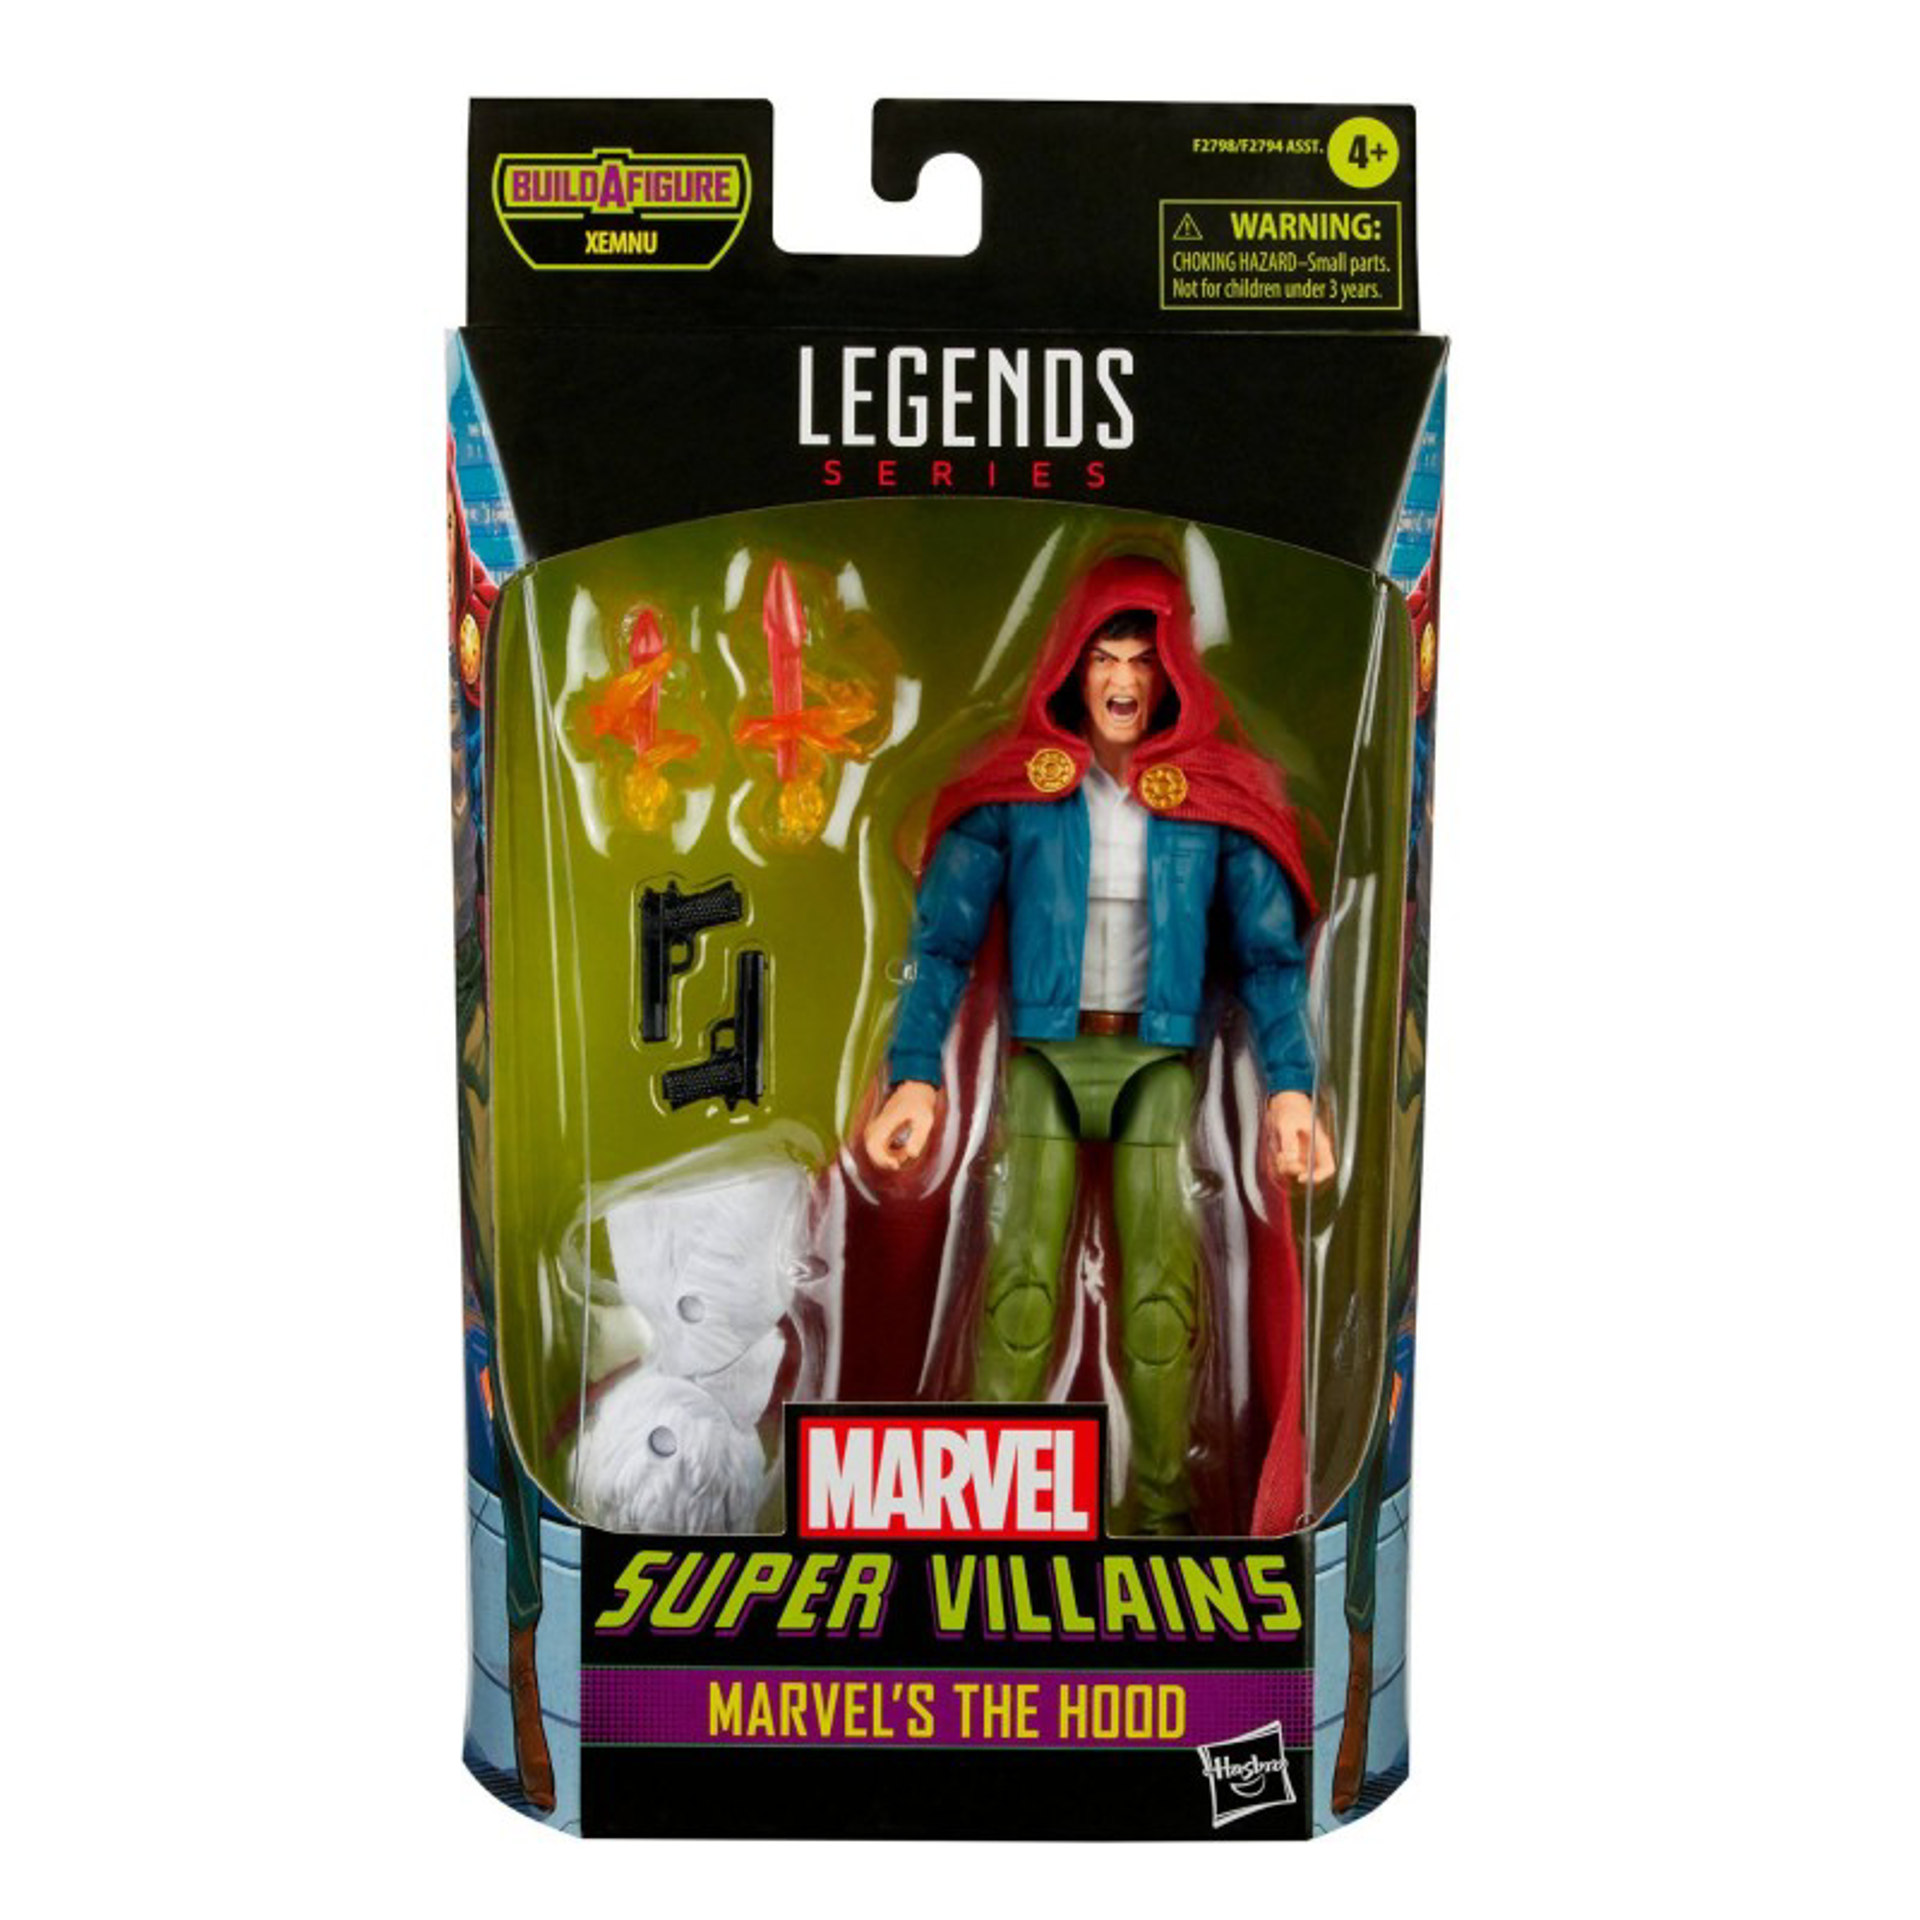 Marvel Legends Series - Build-A-Figure Série Xemnu - Marvel Super Villains Figurine d'action de Marvel's The Hood 15cm